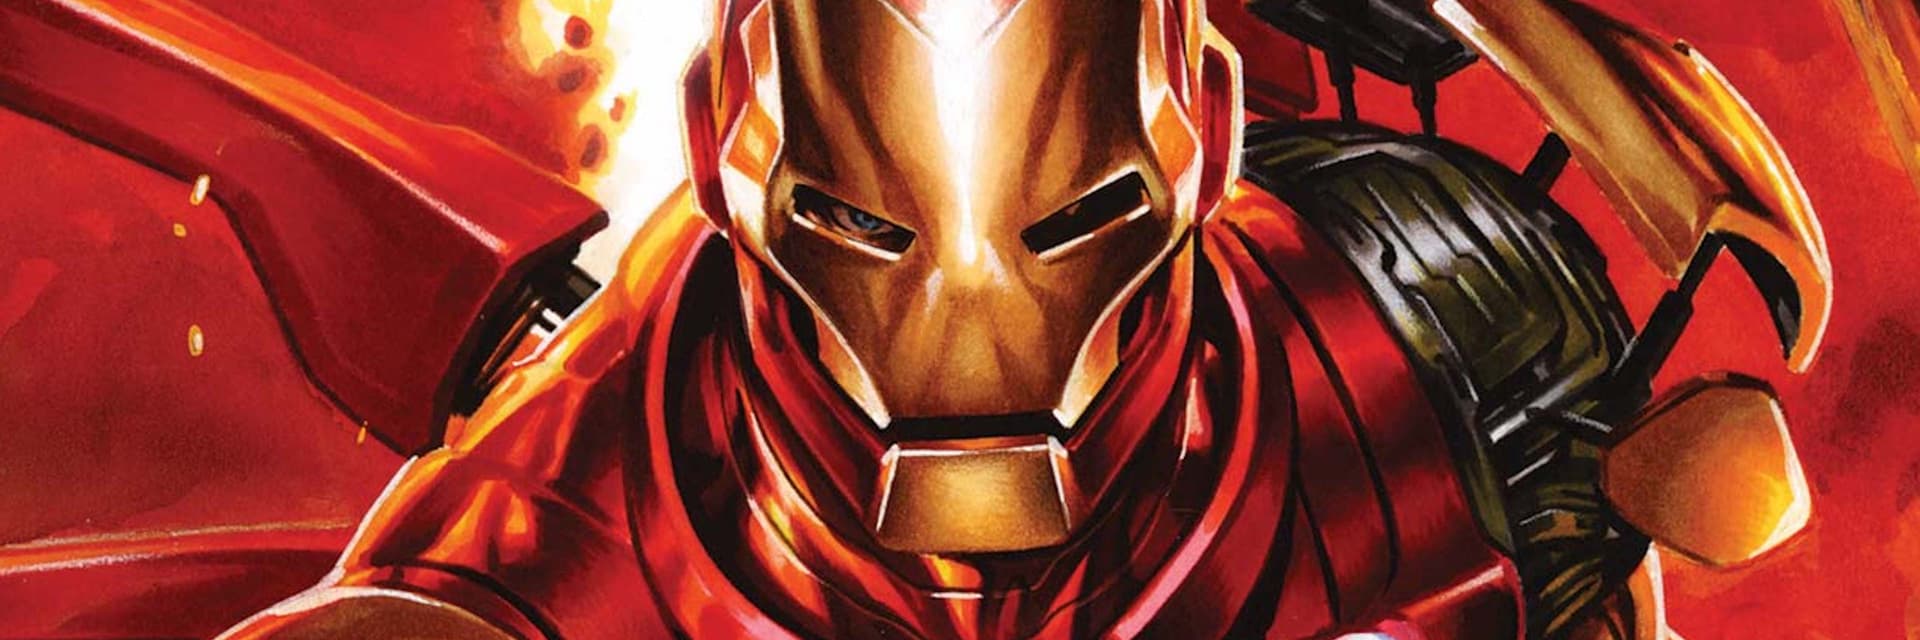 Iron Man: Movie Version by grantgoboom on DeviantArt